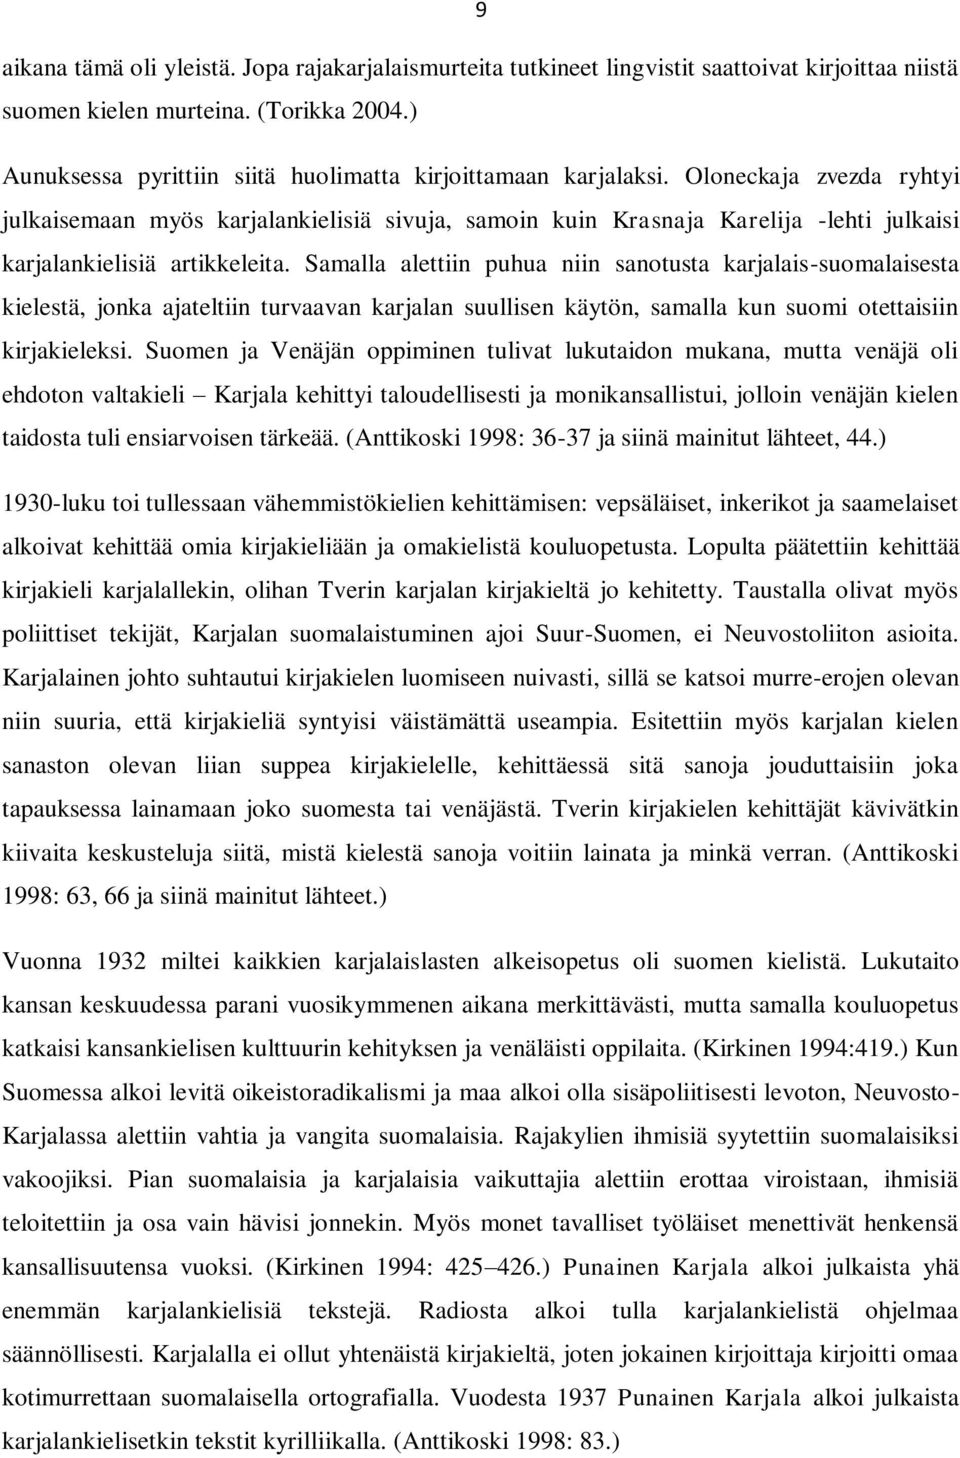 Oloneckaja zvezda ryhtyi julkaisemaan myös karjalankielisiä sivuja, samoin kuin Krasnaja Karelija -lehti julkaisi karjalankielisiä artikkeleita.